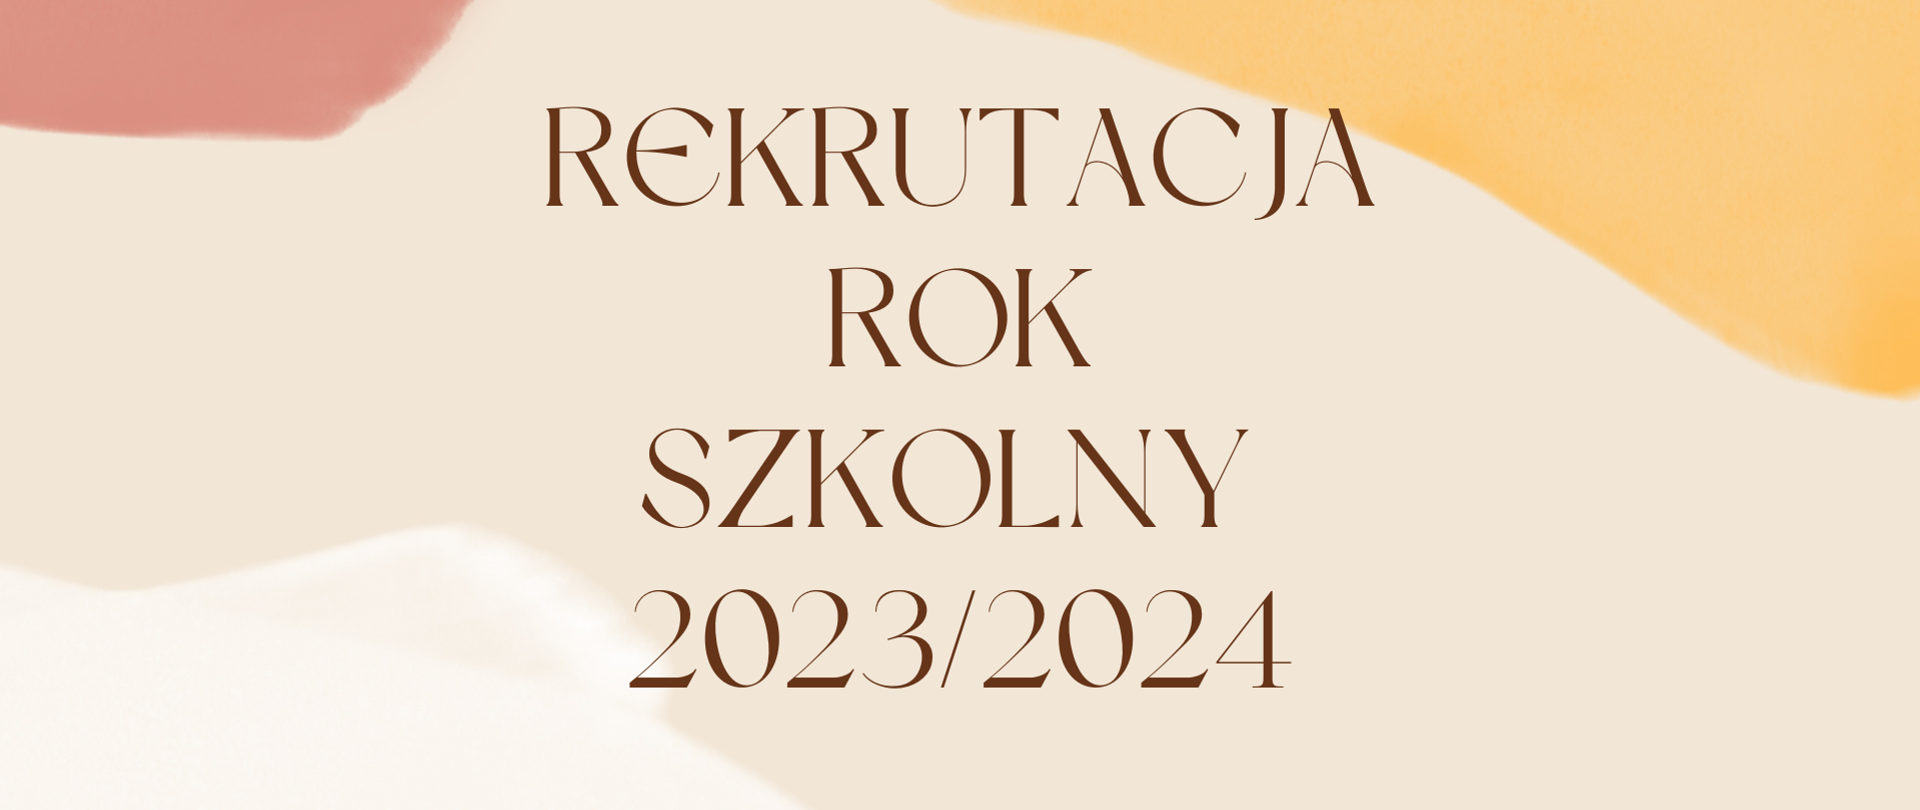 Na środku napis "rekrutacja rok szkolny 2023/2024" w kolorze ciemnobeżowym. Tło jasnobeżowe, w trzech rogach rozlane są plamy w kolorze białym, ciemnoróżowym i pomarańczowym.